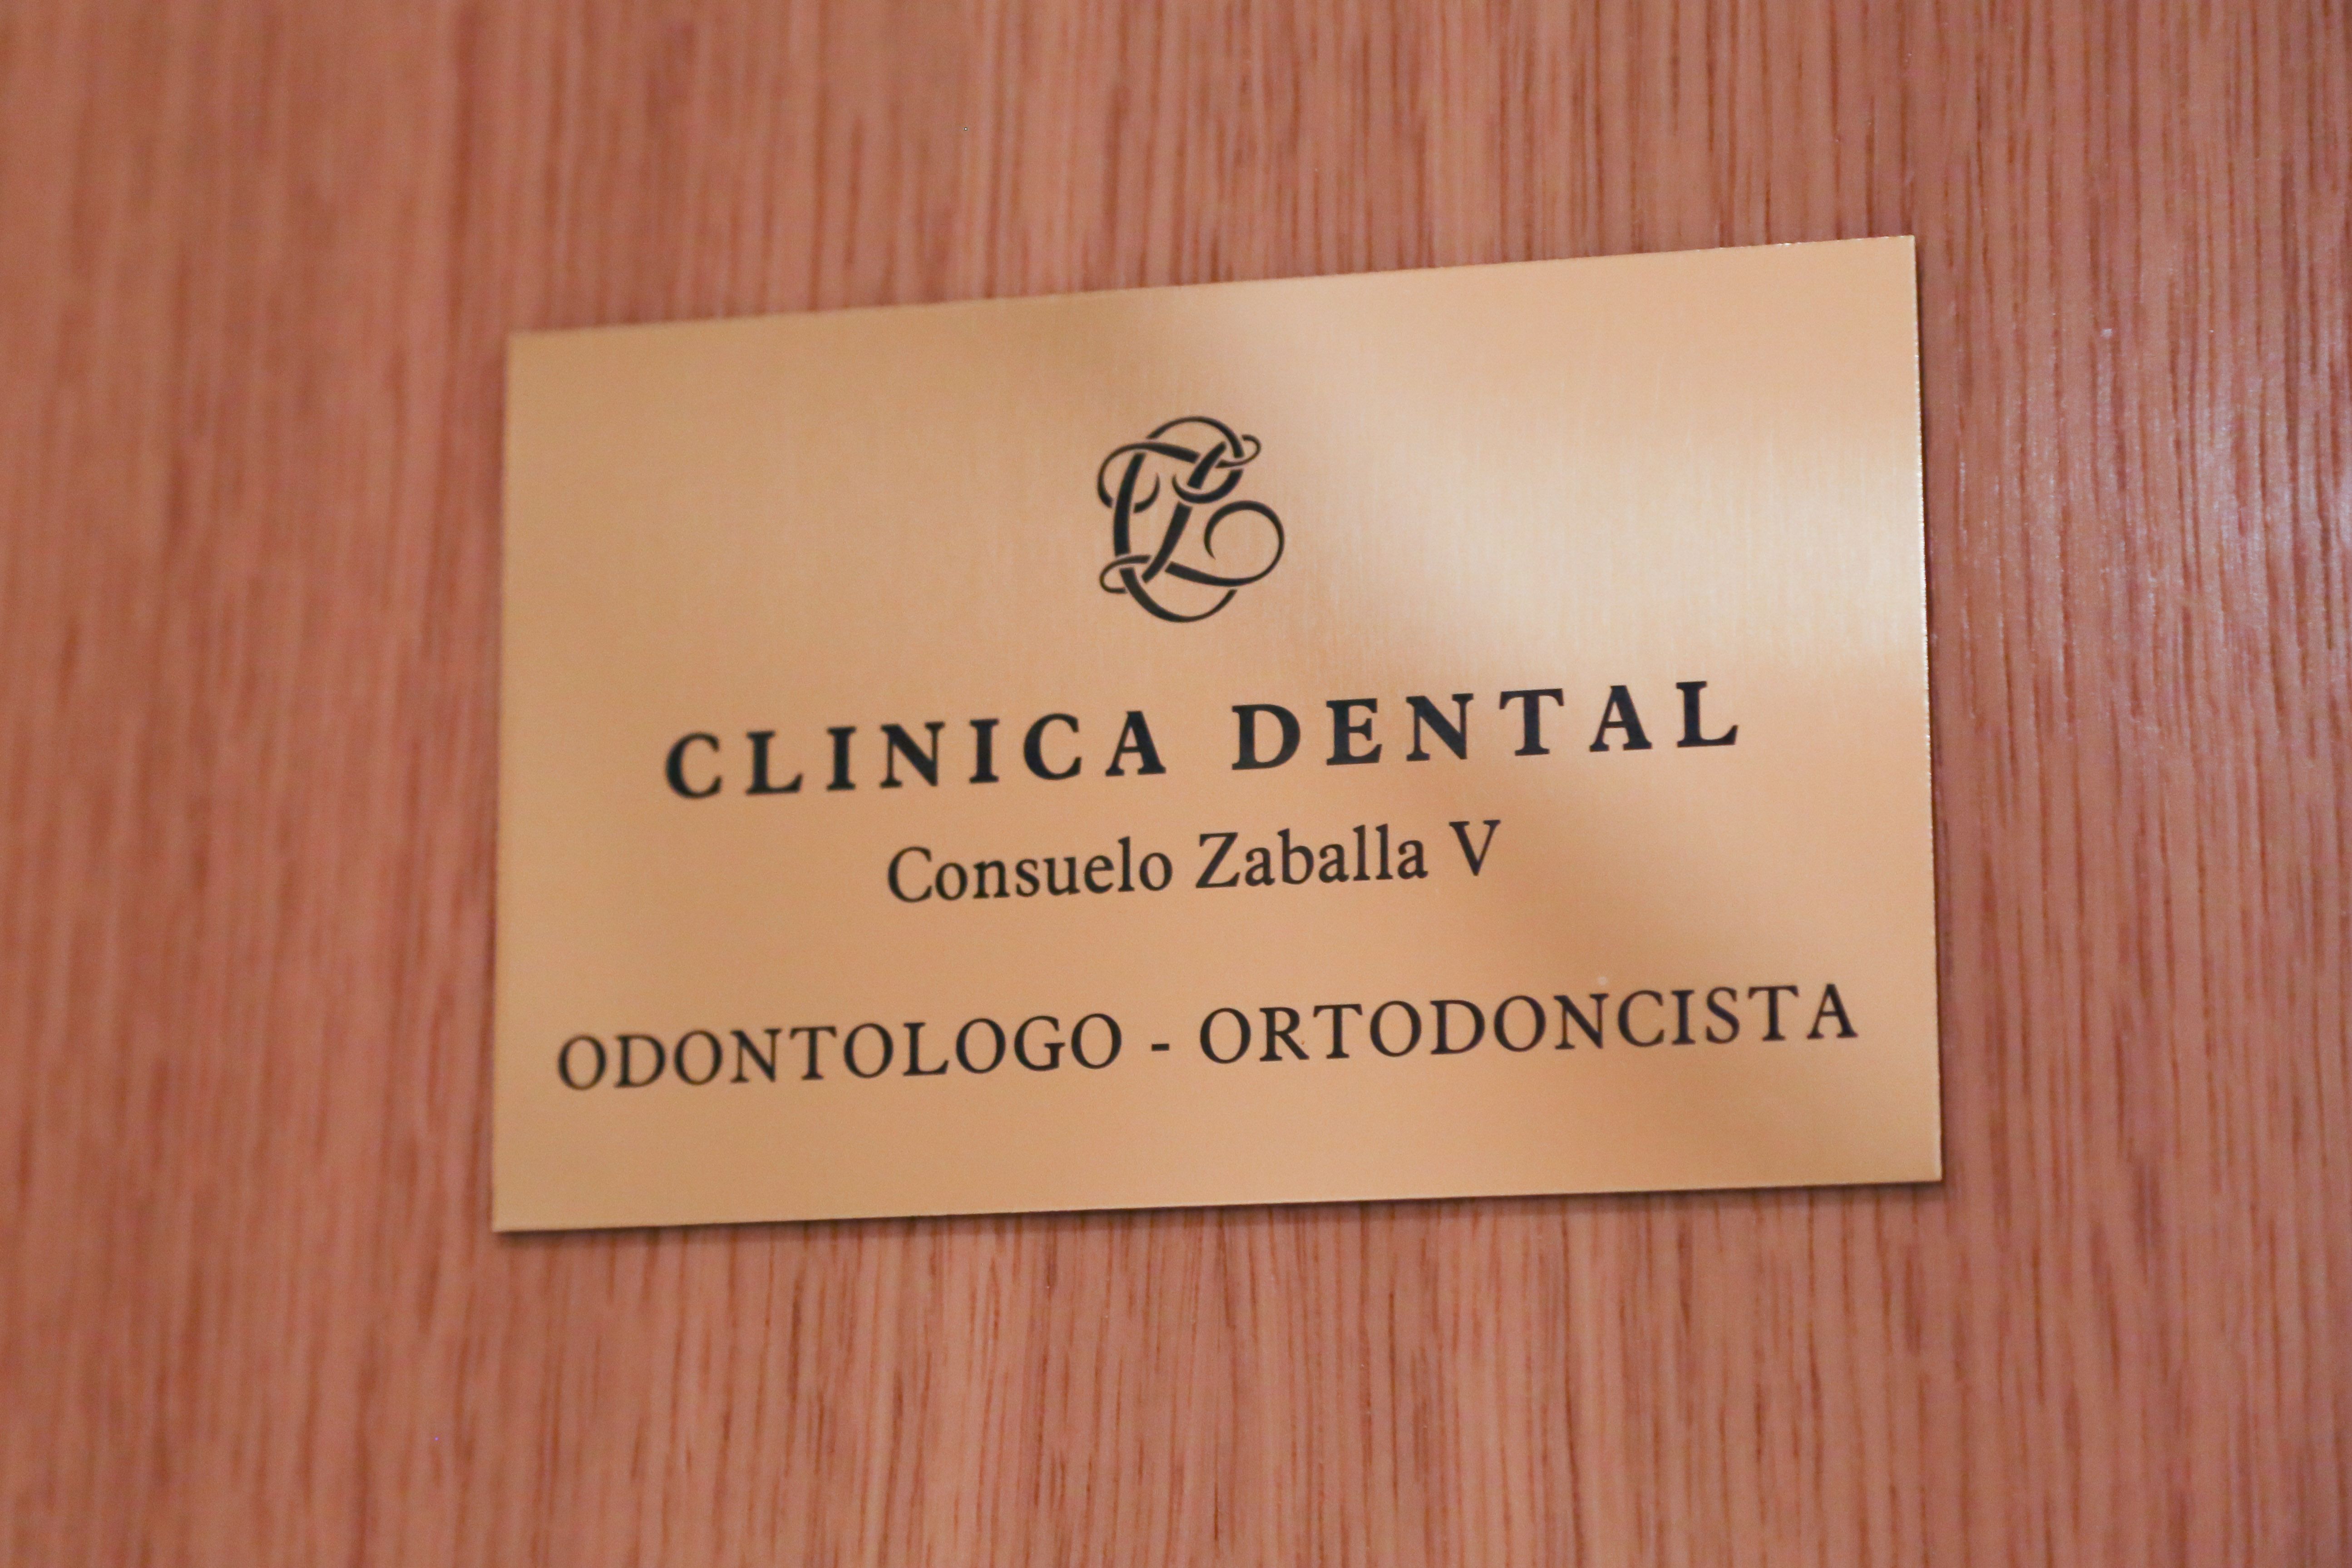 Foto 5 de Dentistas en Madrid | Clínica Dental Dra. Consuelo Zaballa